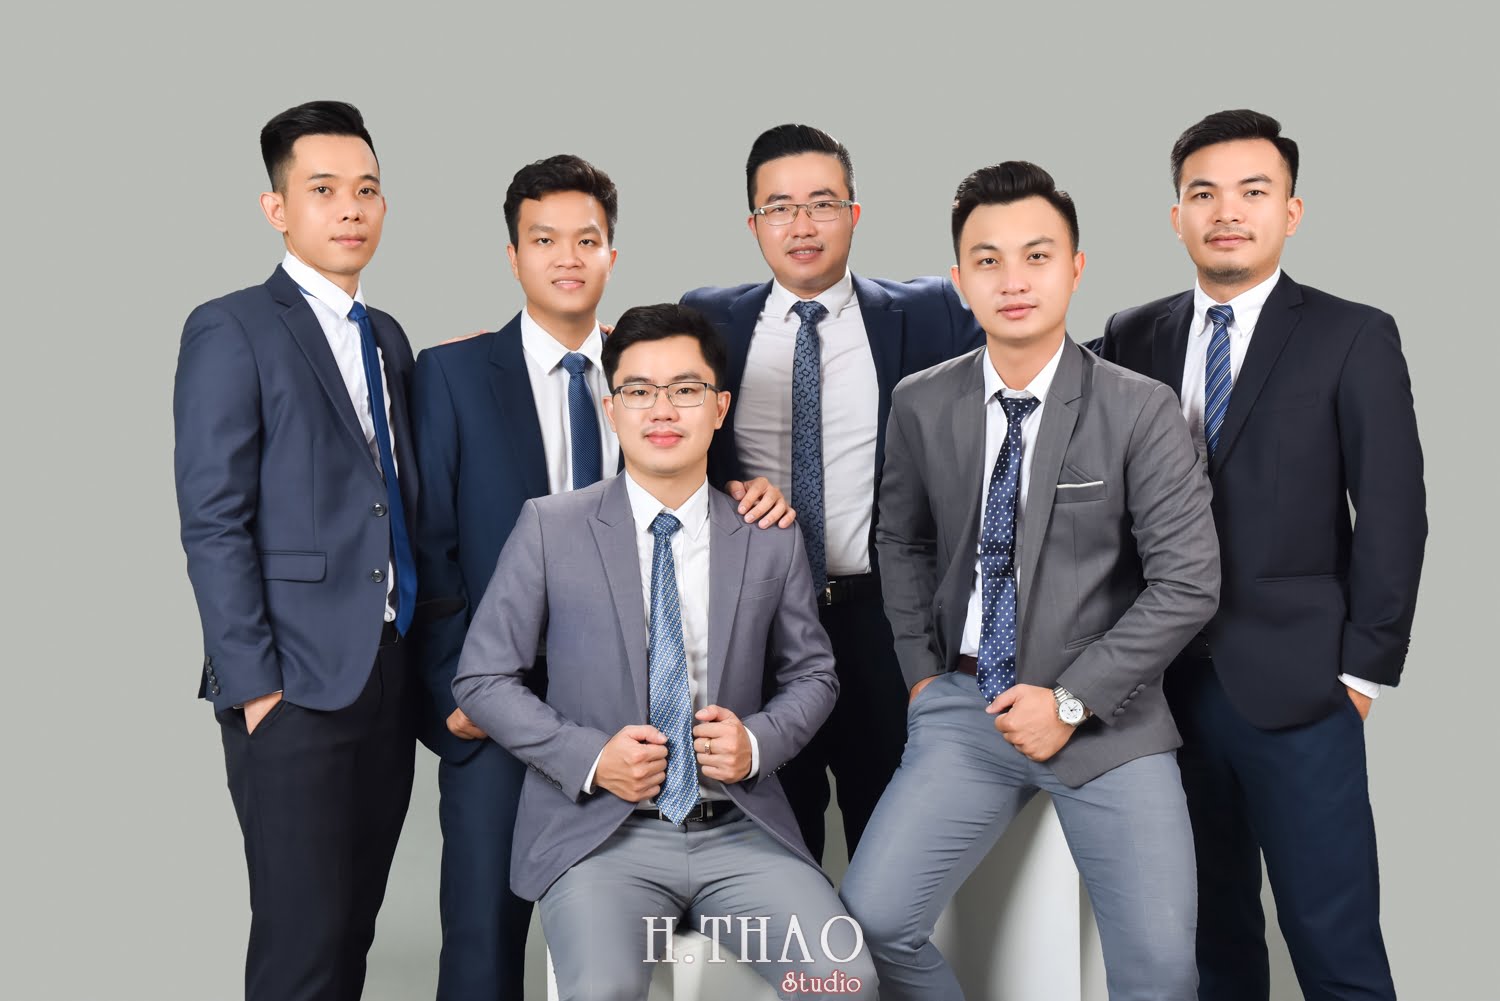 Anh profile cong ty 11 - Chụp ảnh profile cho đội nhóm sale ngân hàng - HThao Studio